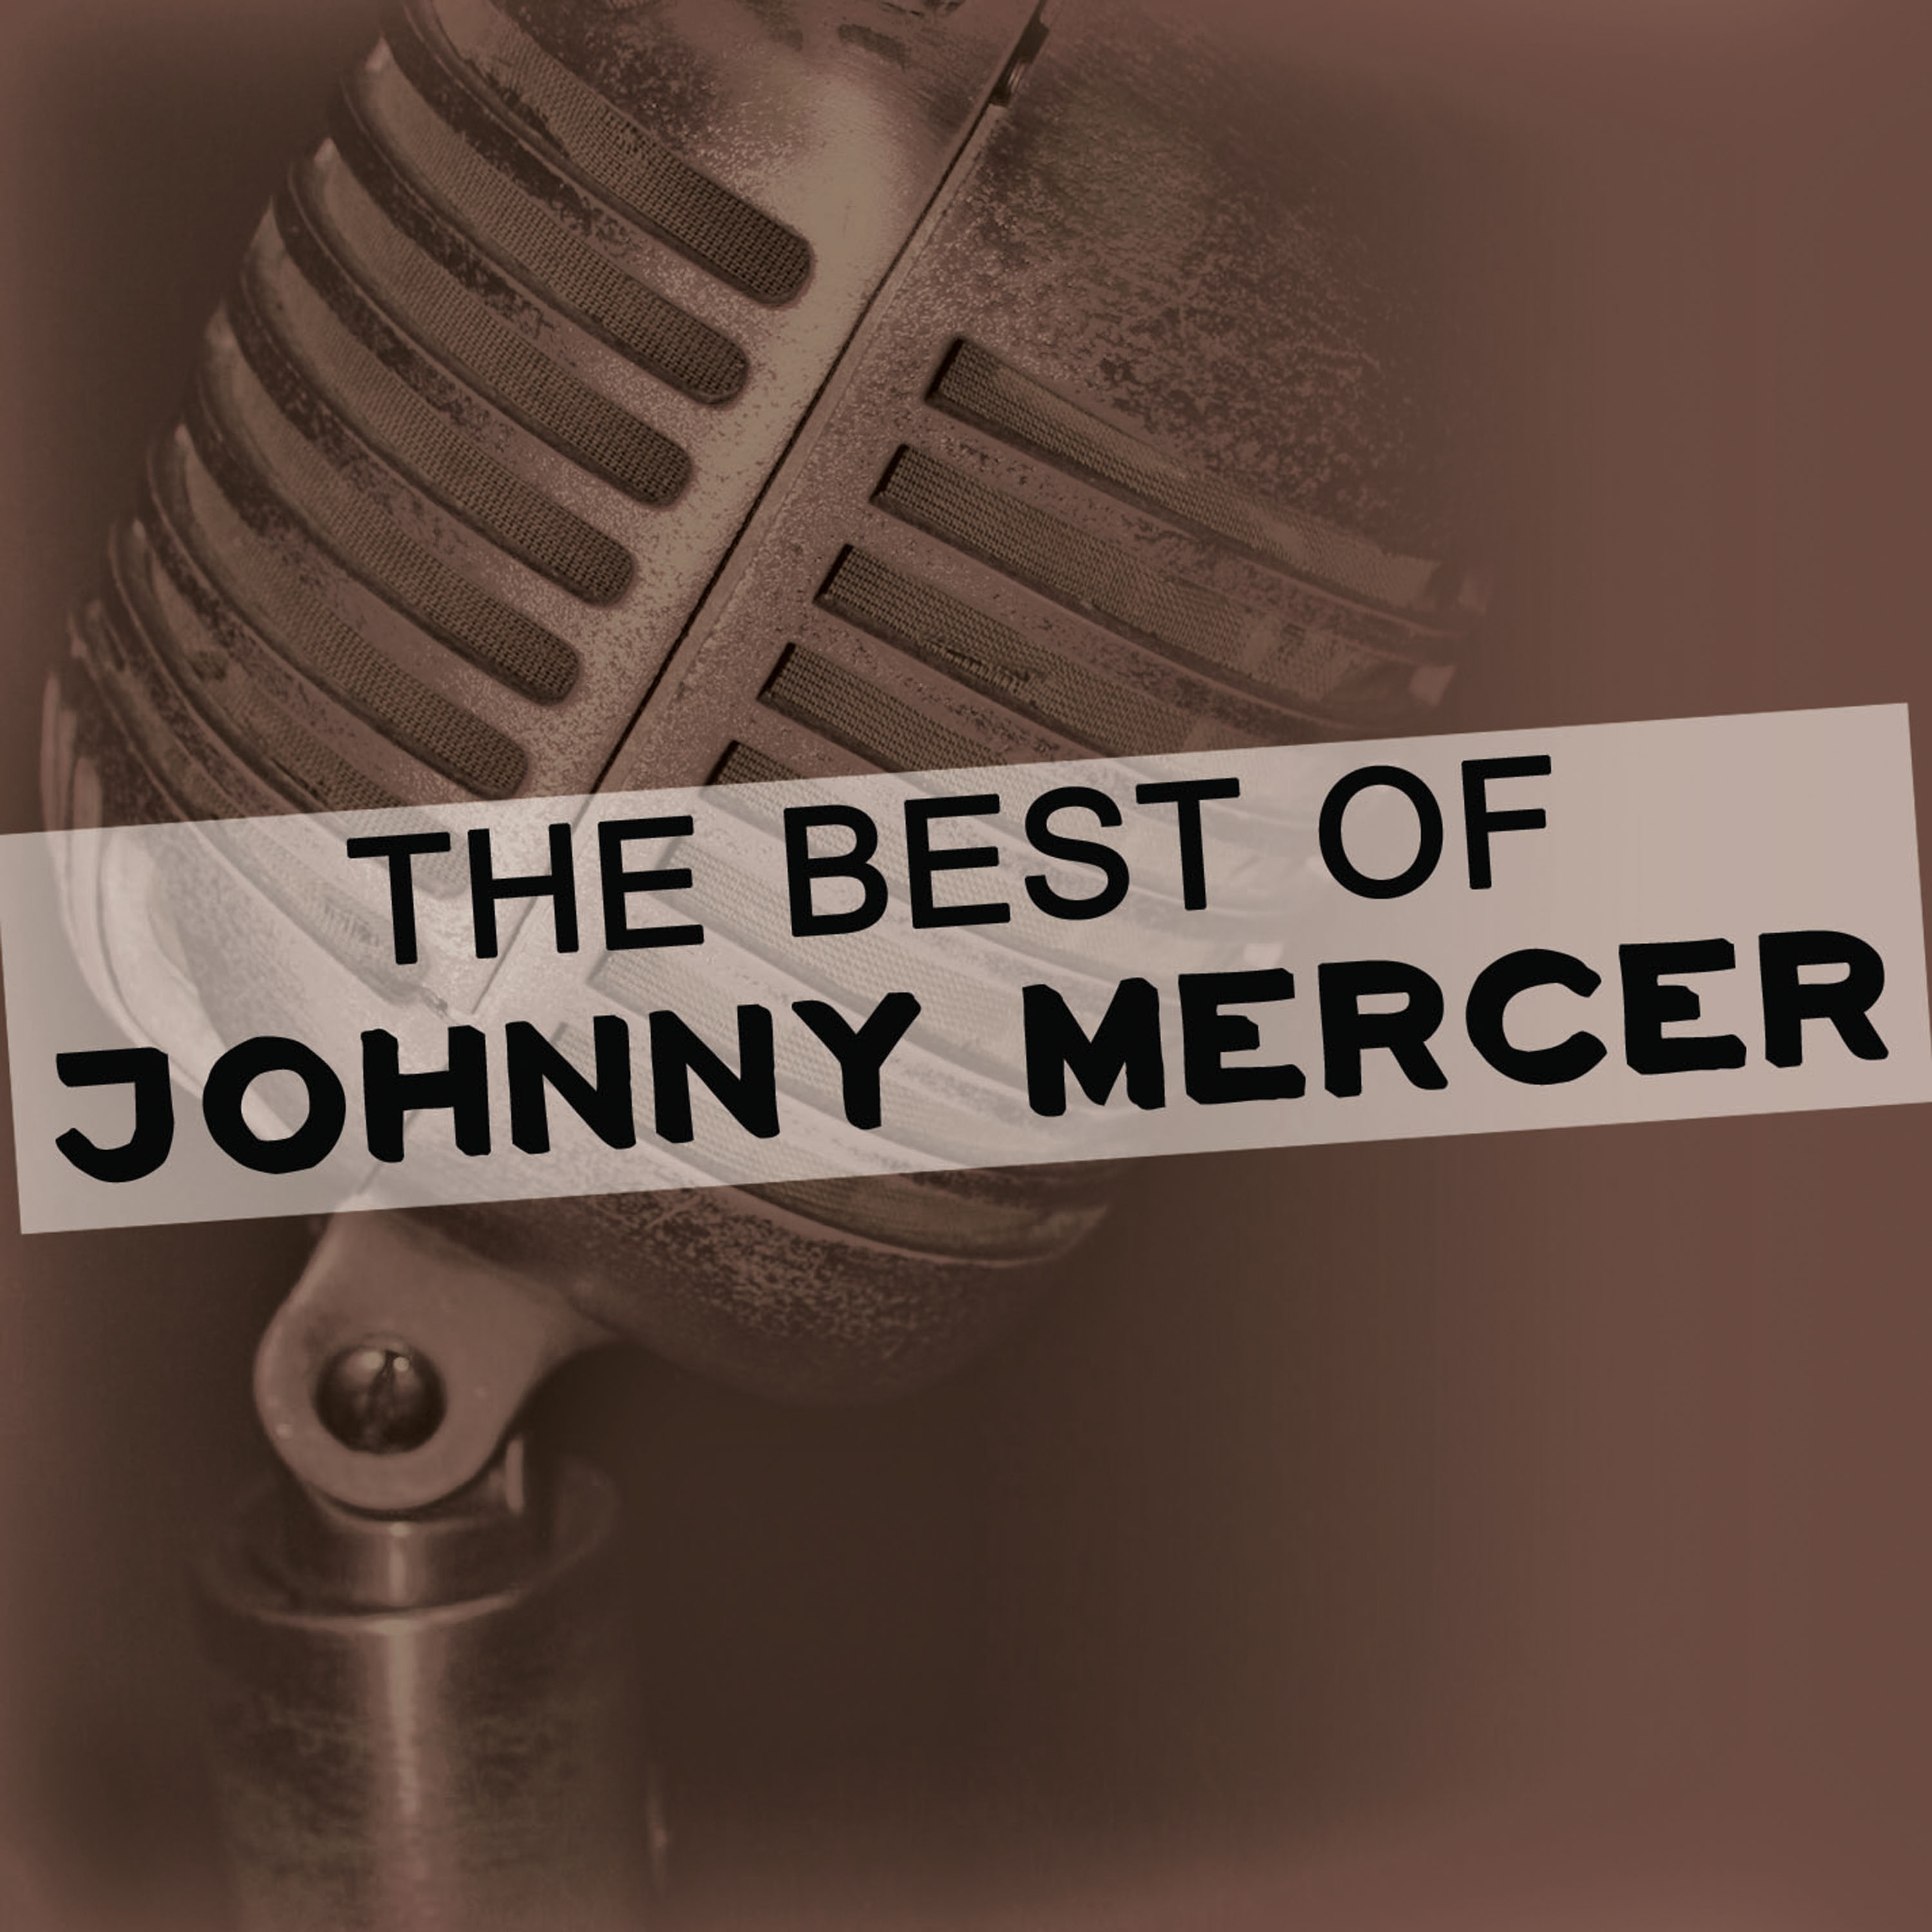 The Best of Johnny Mercer